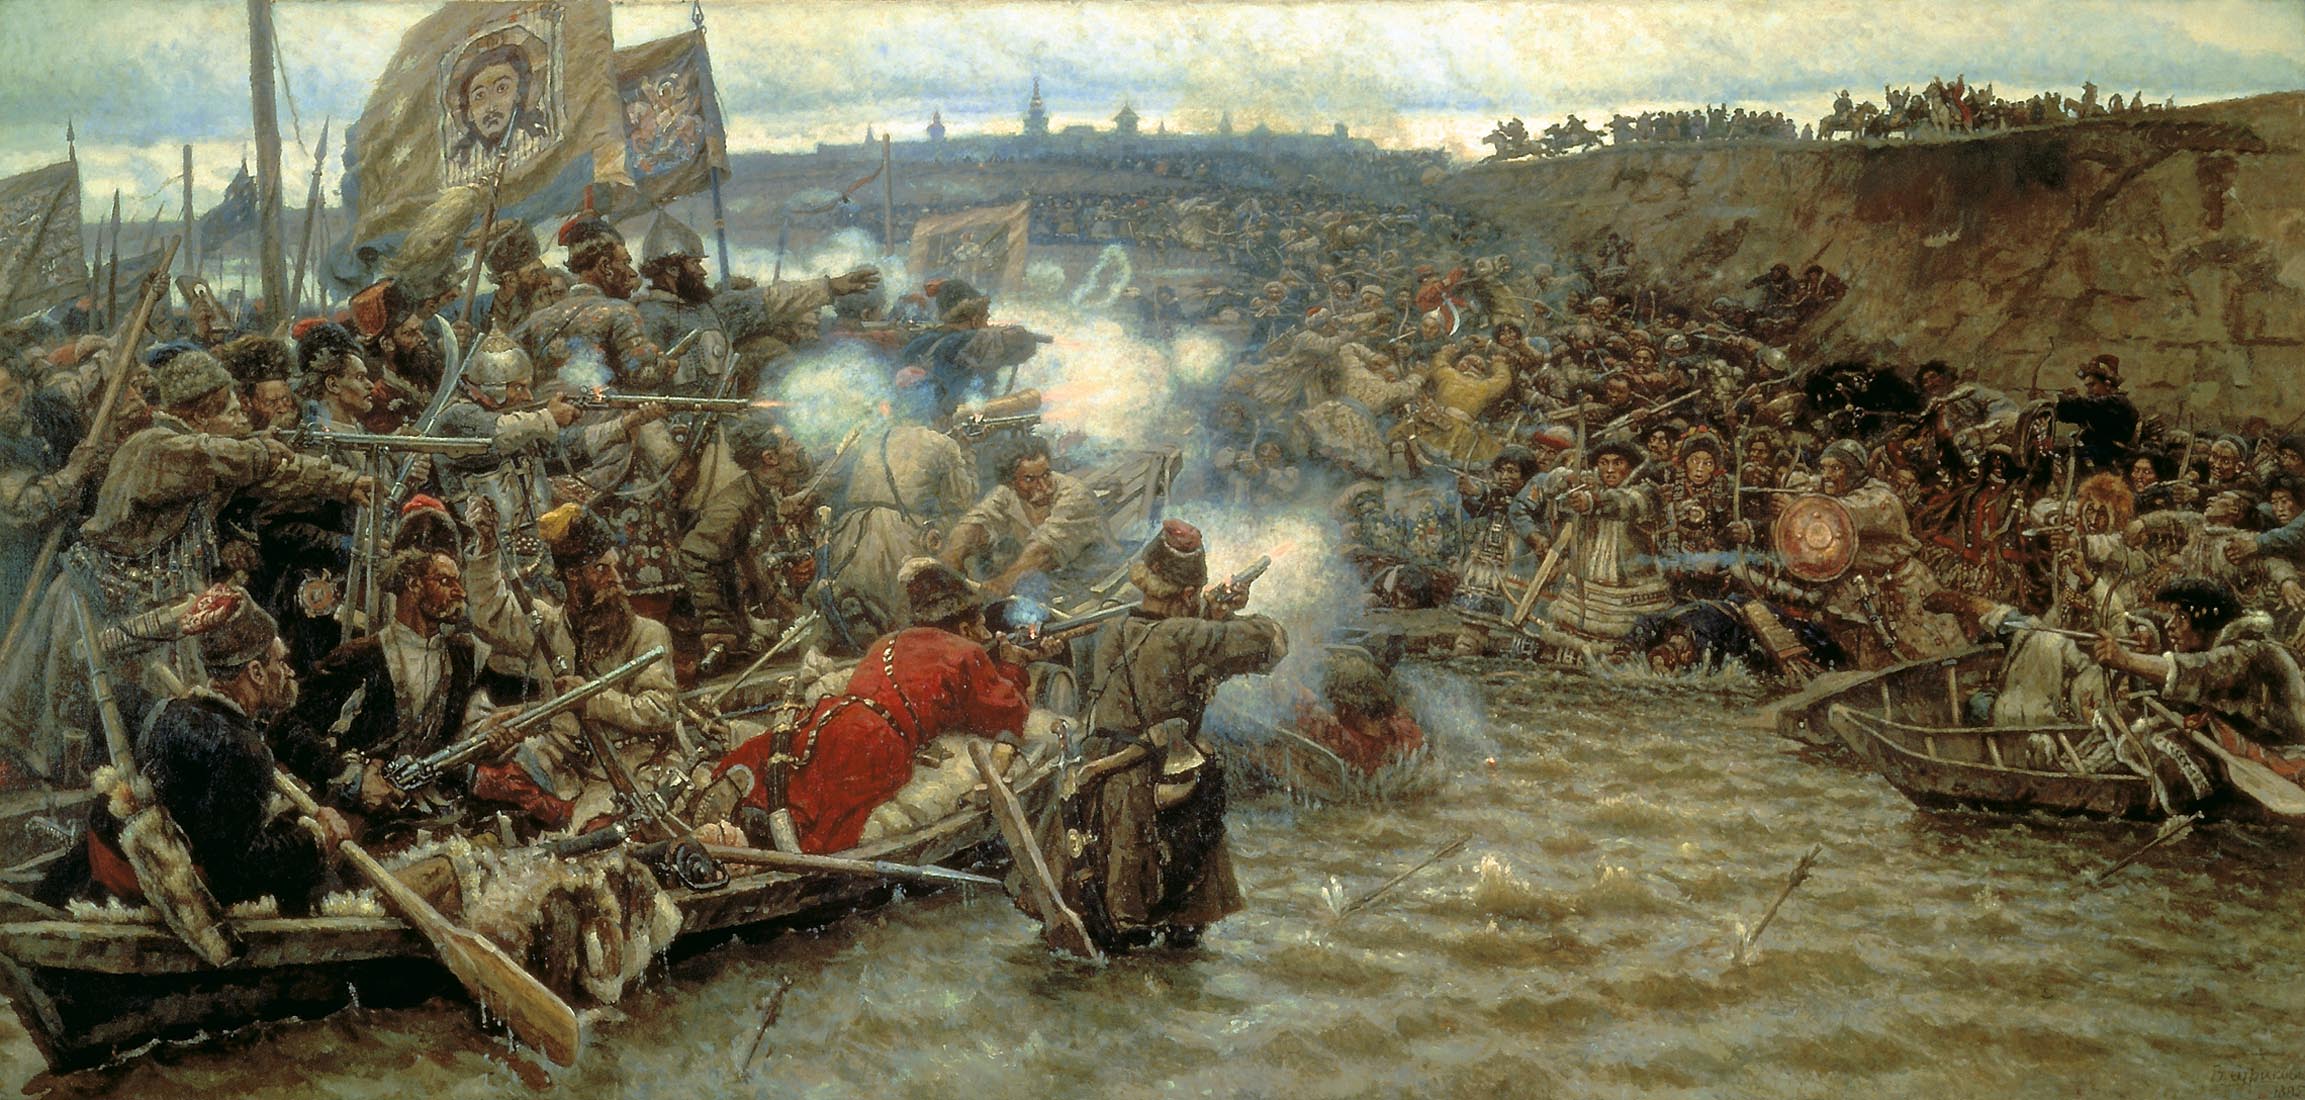 Yermak's conquest of Siberia (1895).